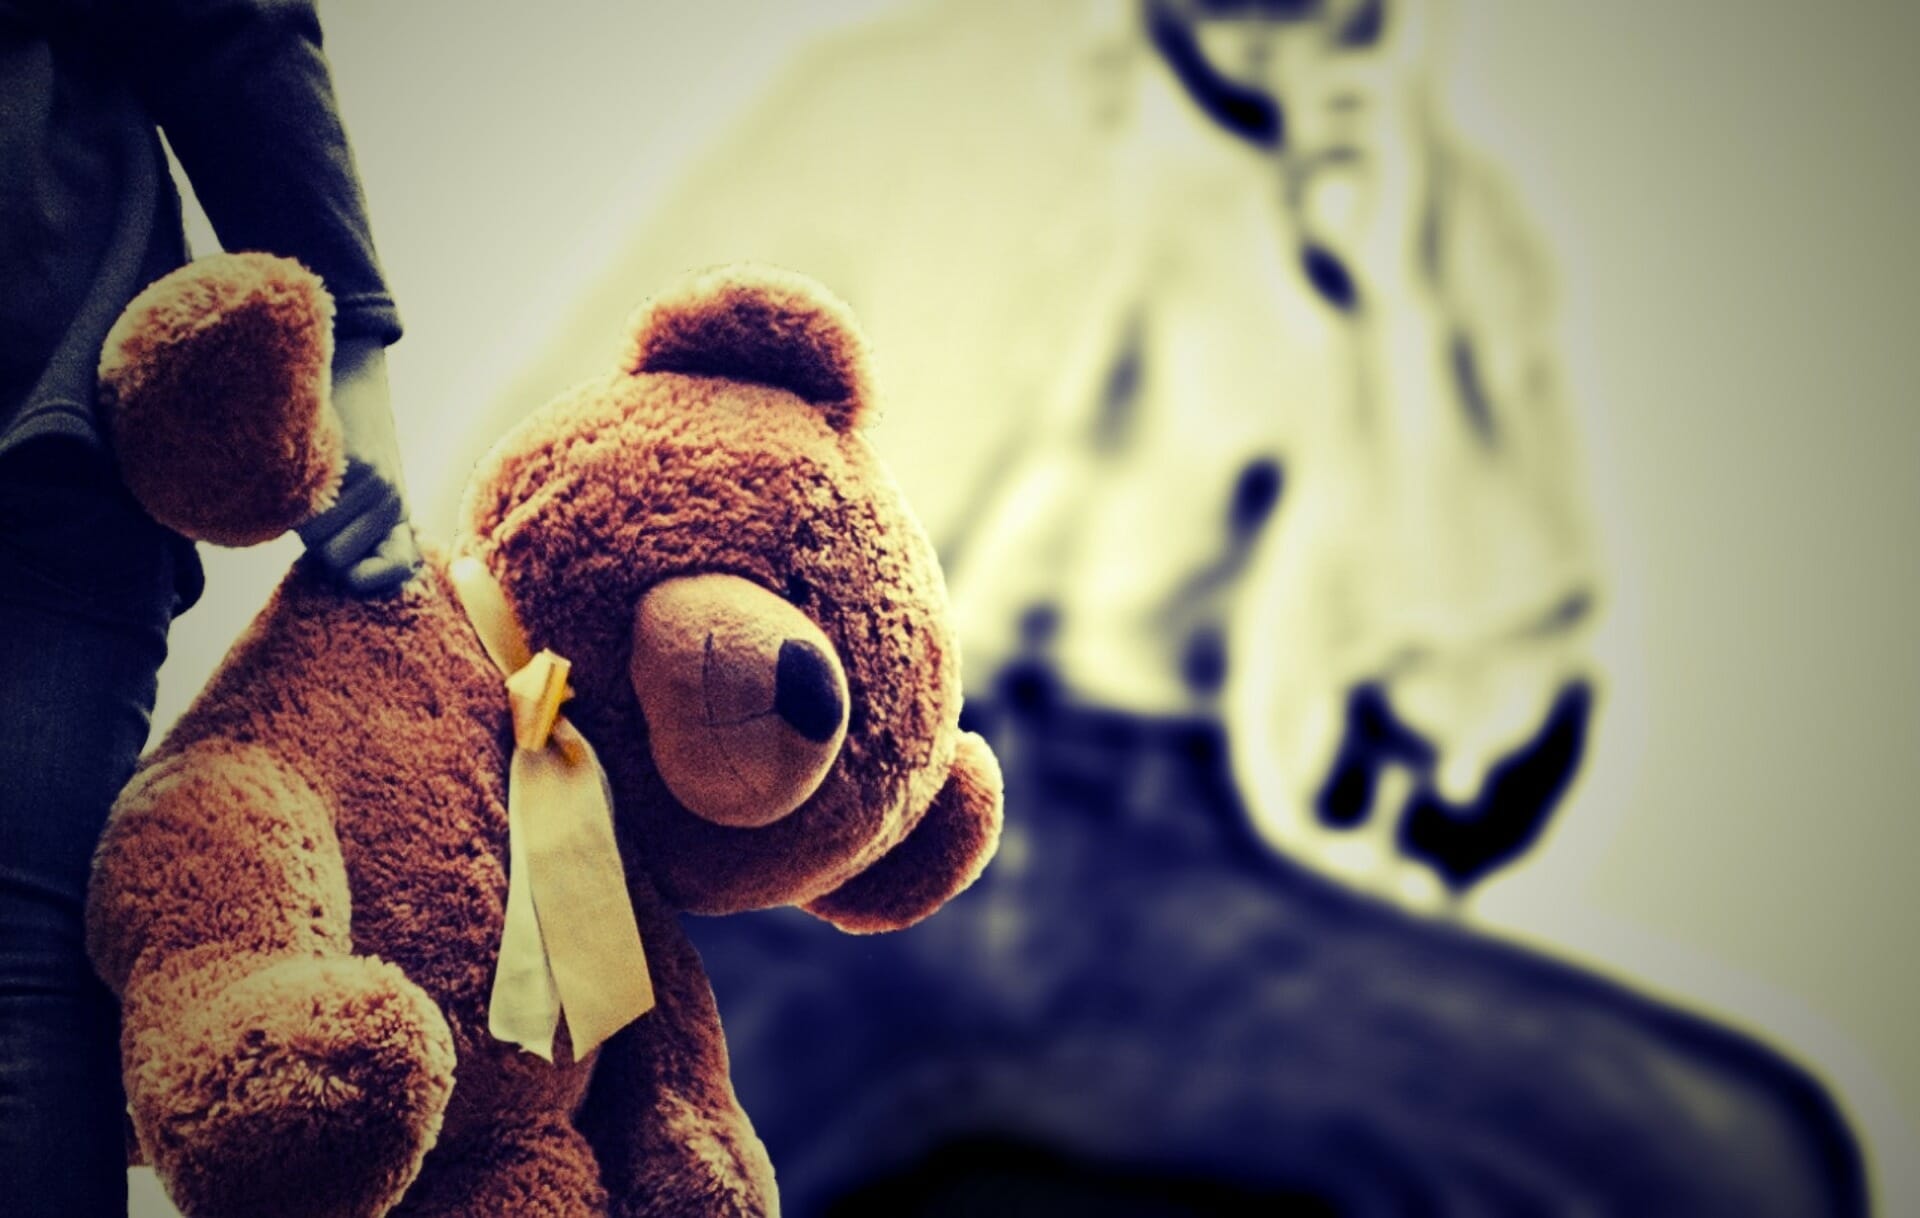 Kind mit Teddybären in der Hand. Im Hintergrund sieht man die Umrisse einer männlichen Person. Das Kind hat Angst vor Gewalt und Missbrauch.